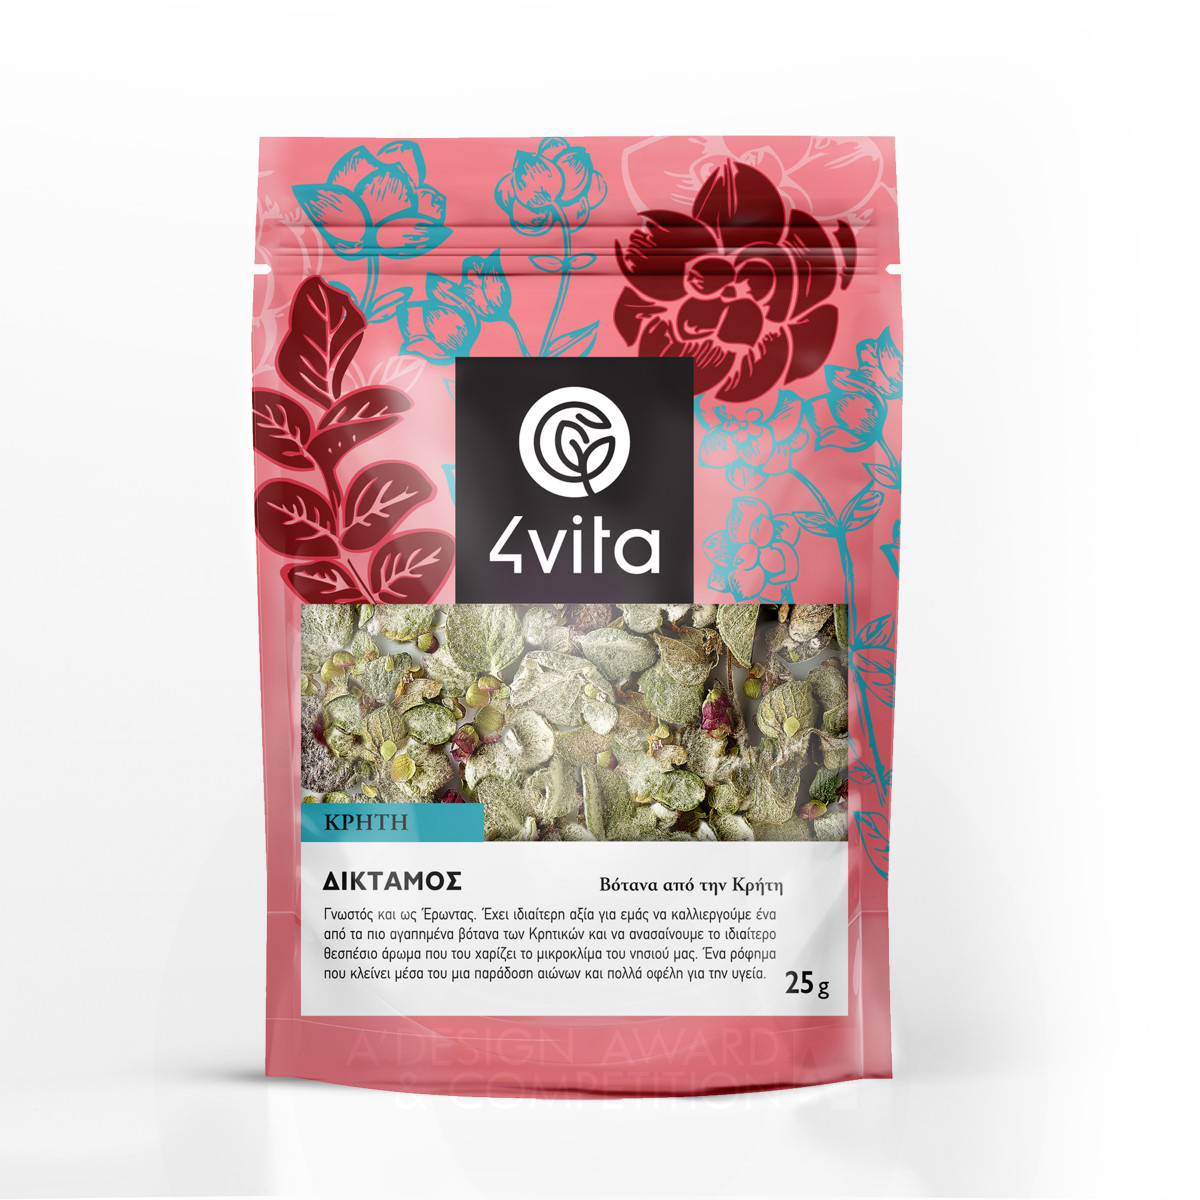 4Vita Herbs Health Beverage  by Maria Stylianaki